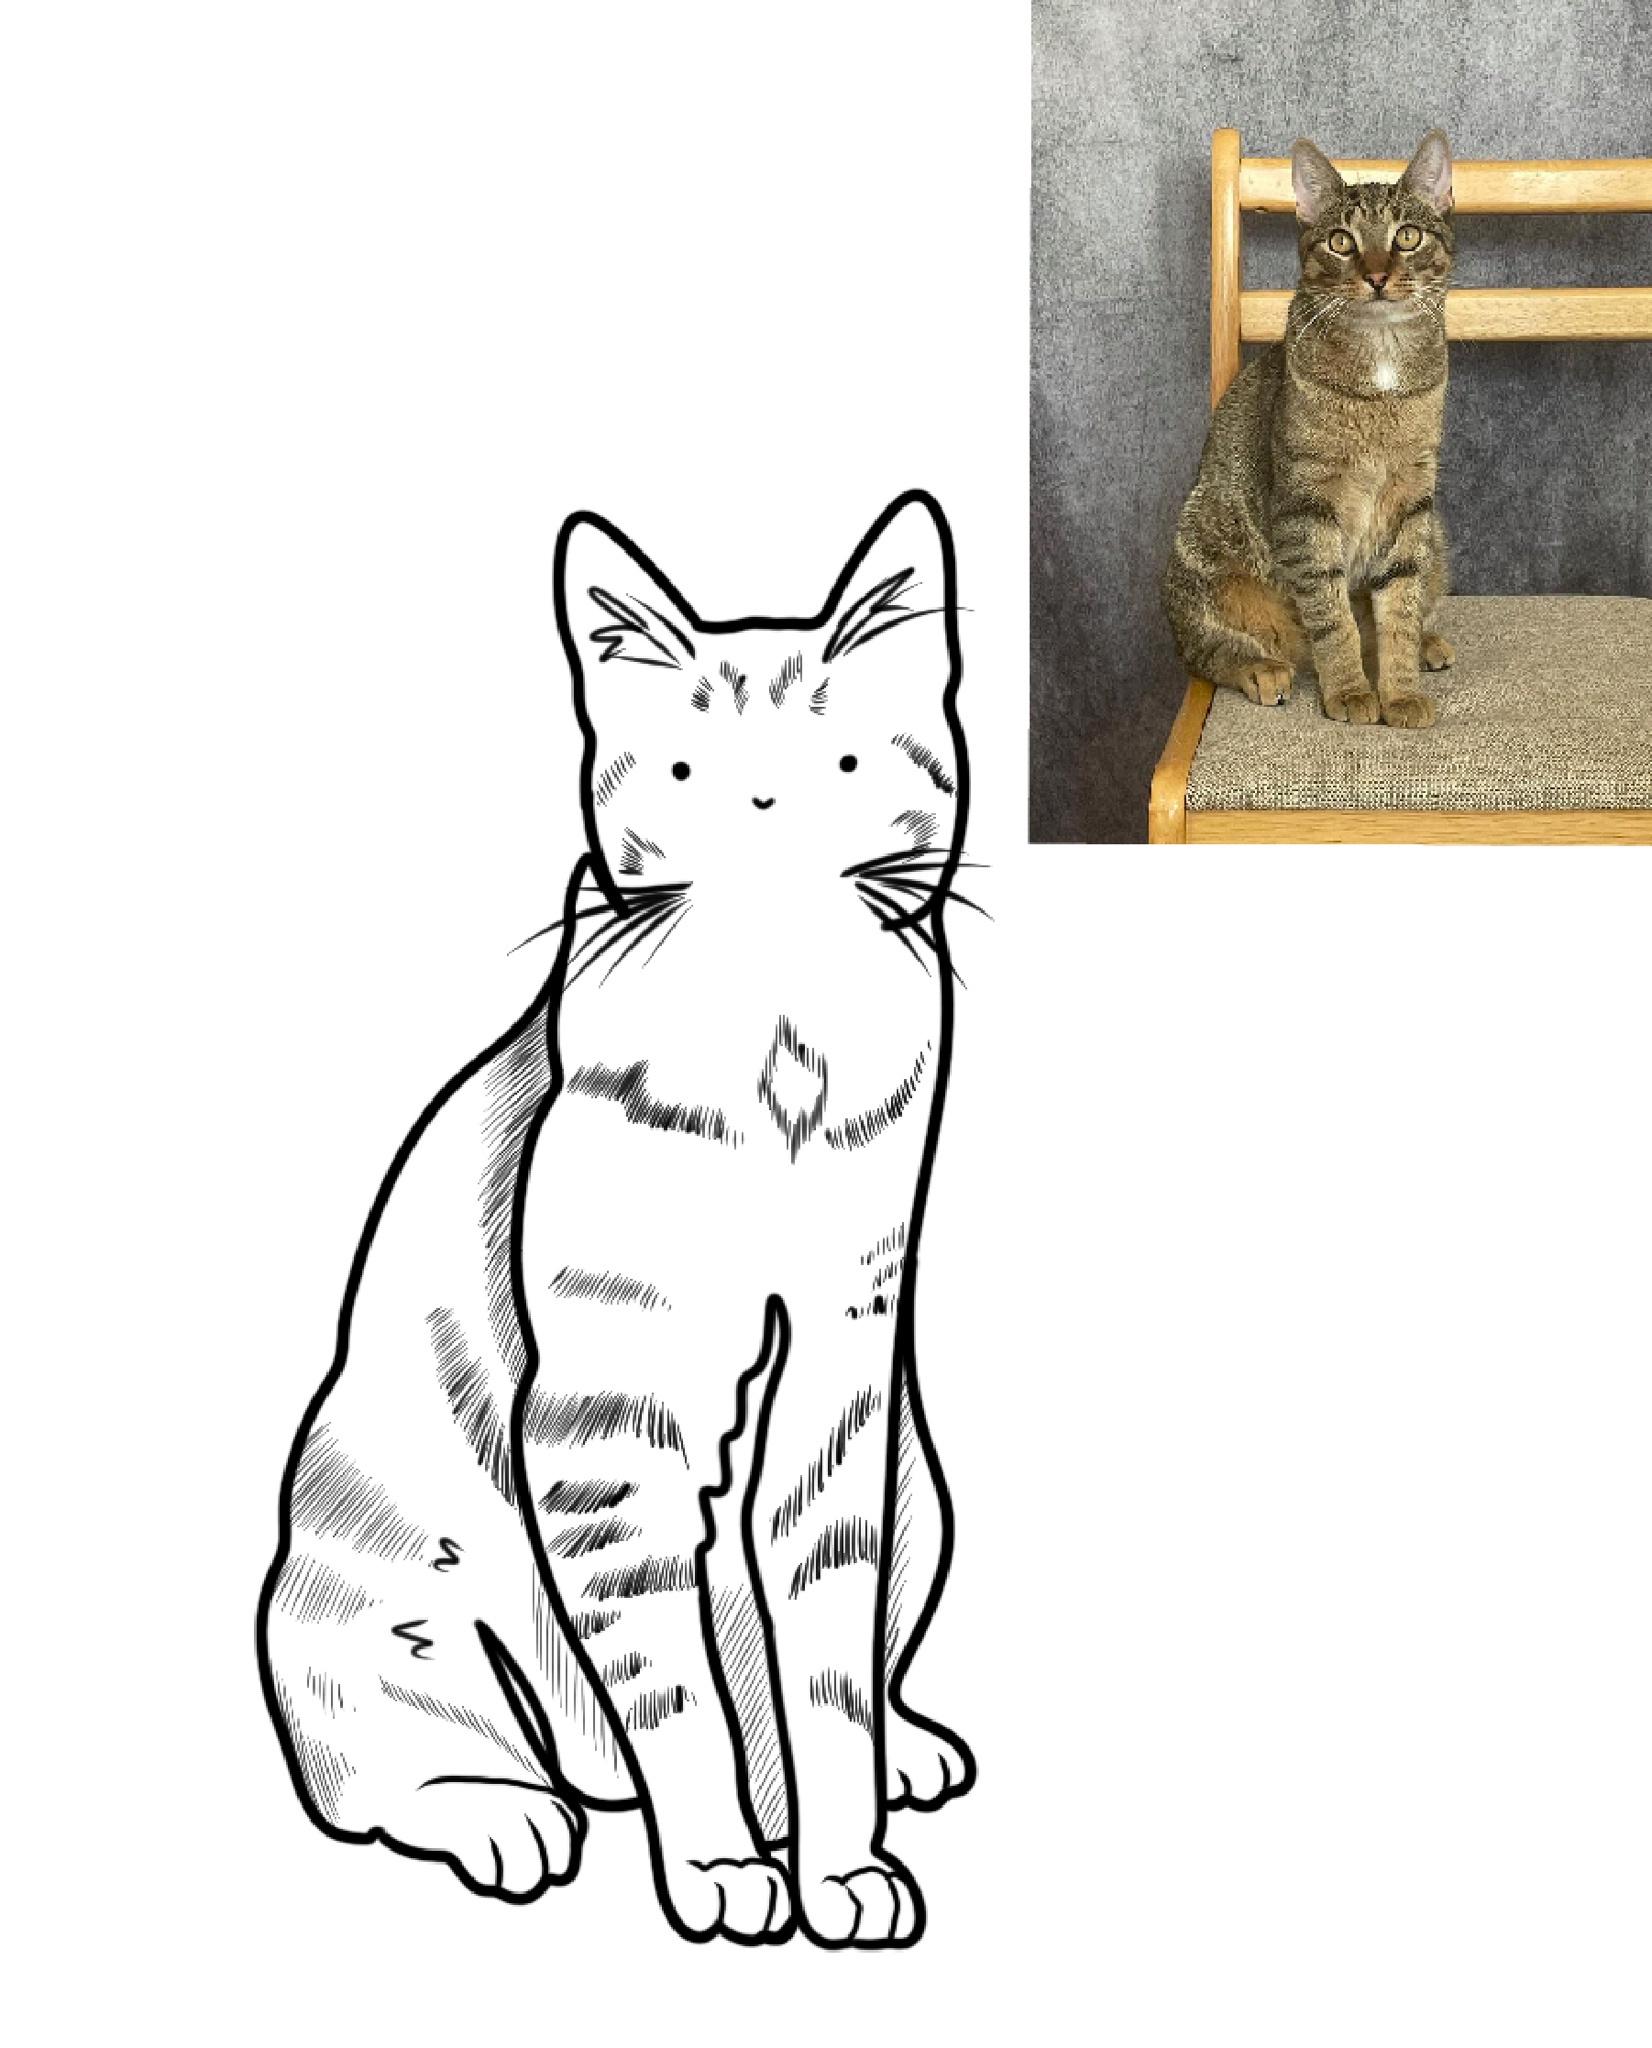 Cat pet portrait